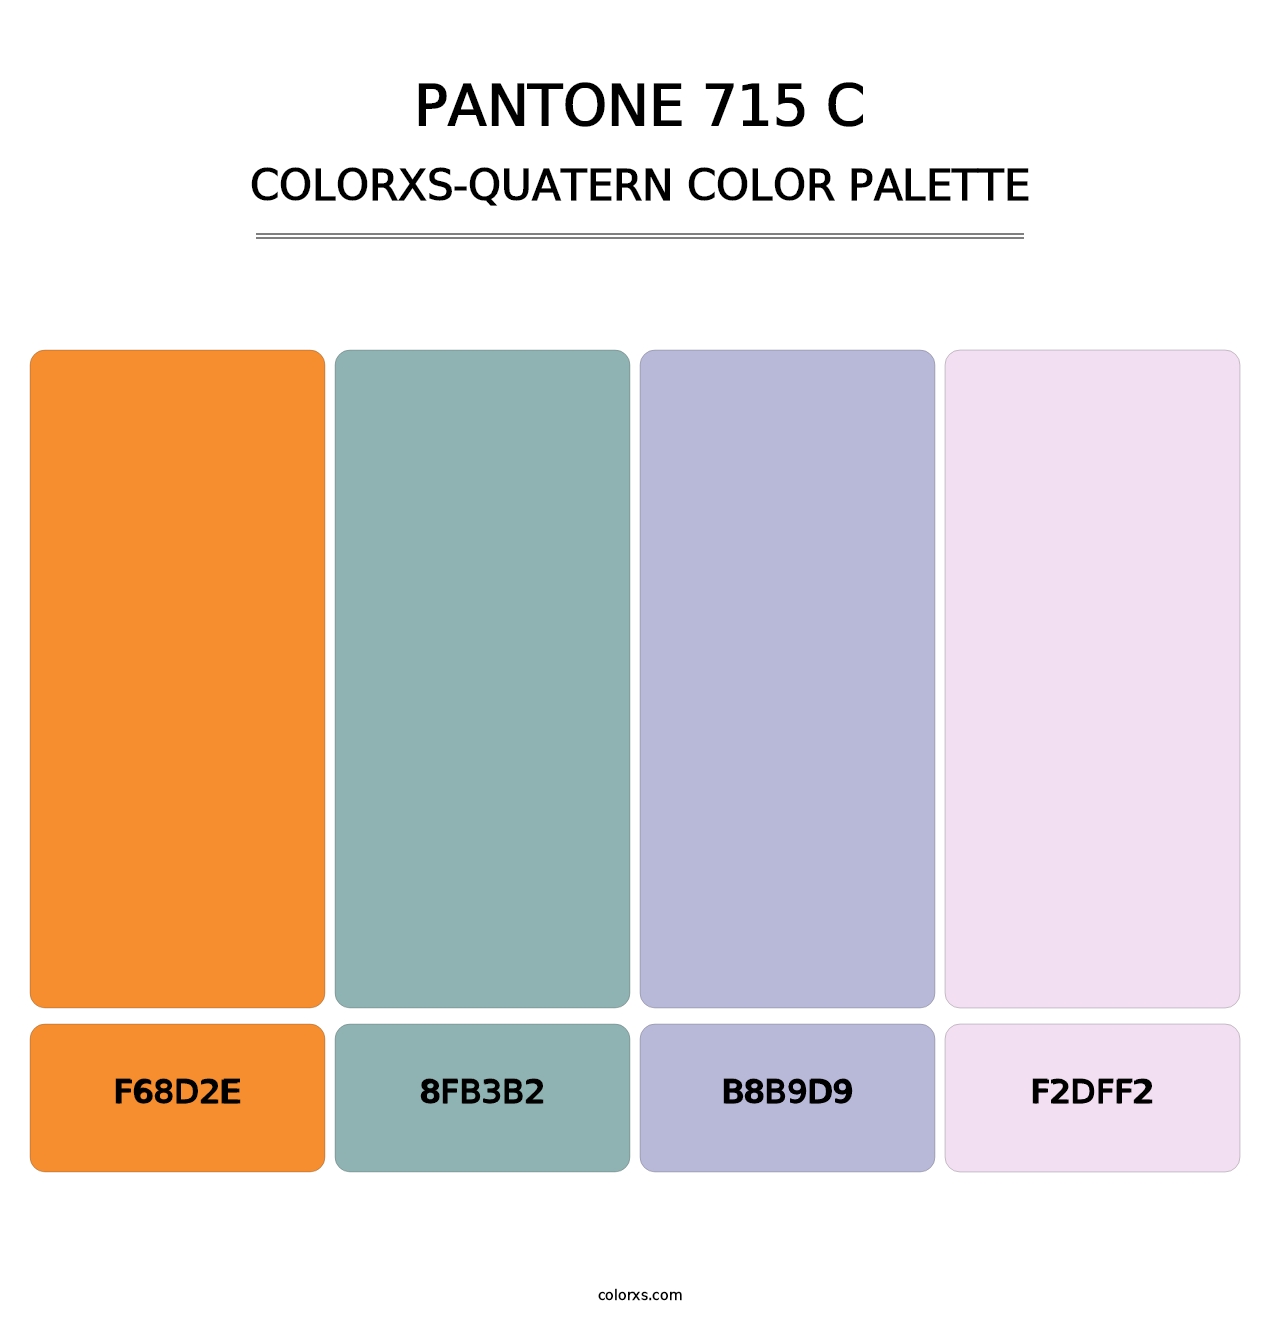 PANTONE 715 C - Colorxs Quatern Palette